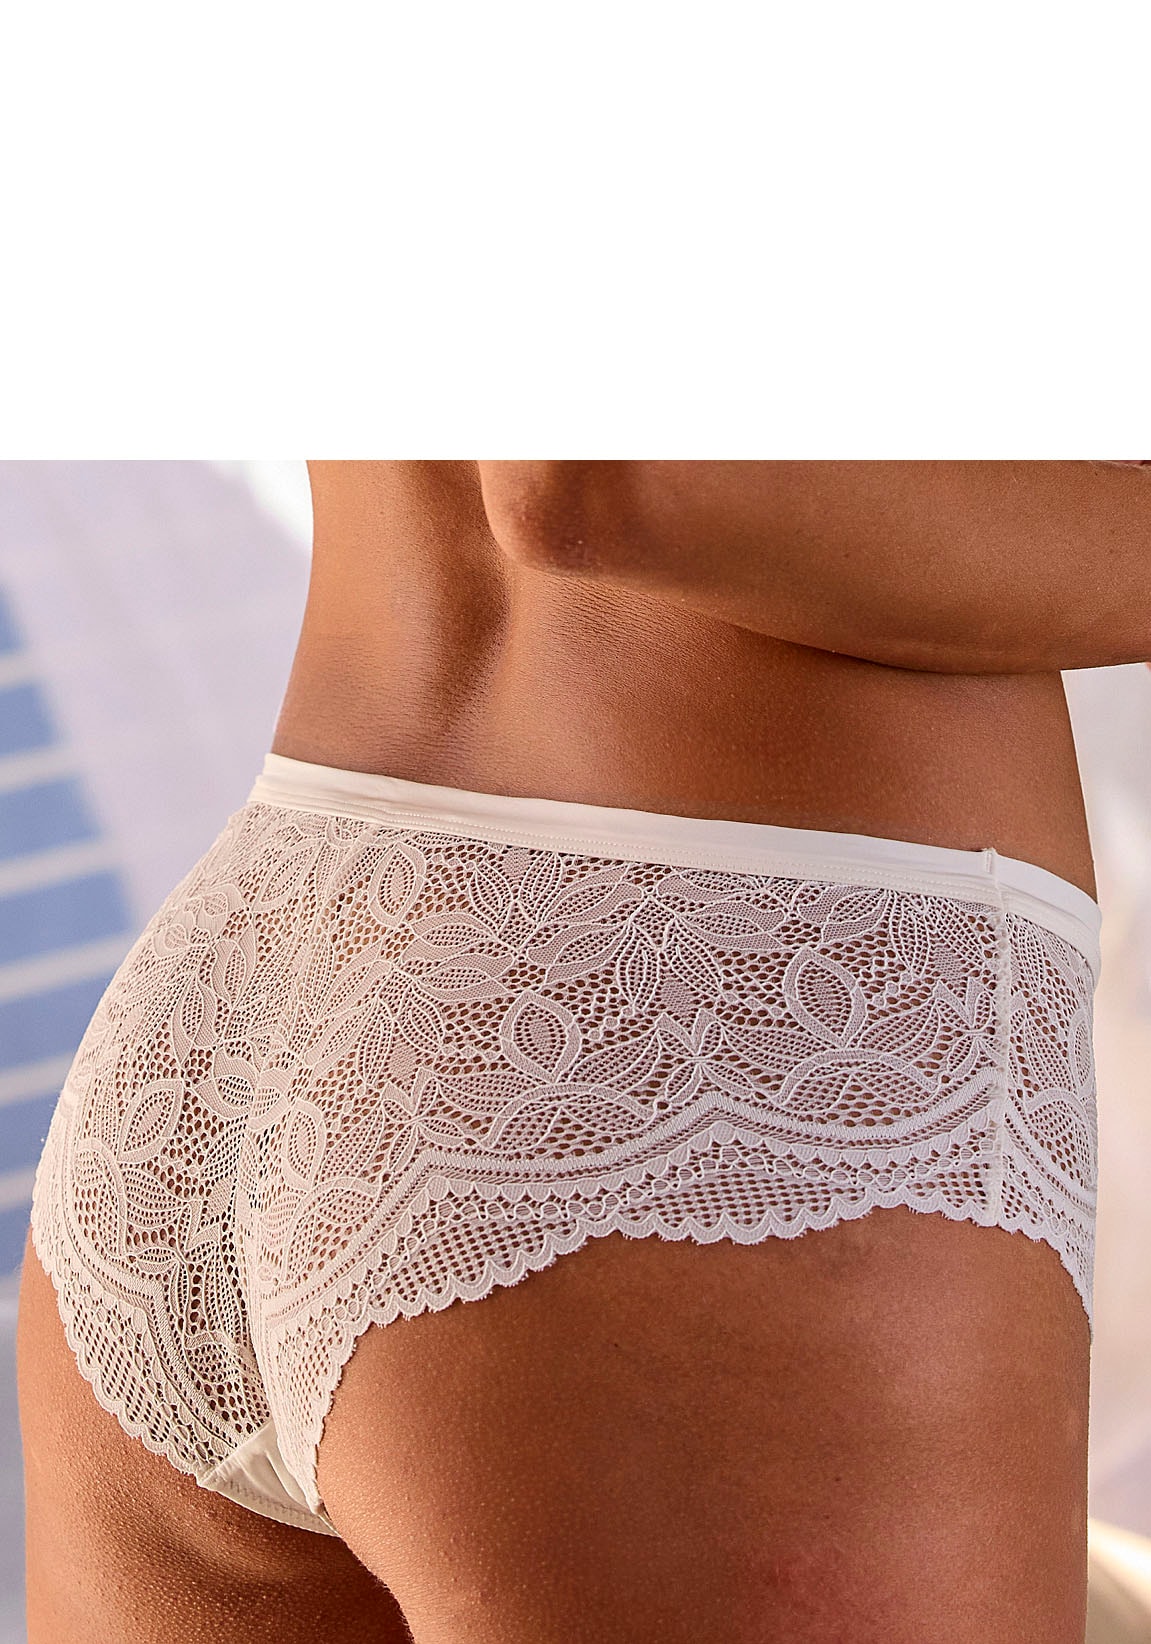 Nuance Panty, rundherum aus transparenter Spitze » LASCANA | Bademode,  Unterwäsche & Lingerie online kaufen